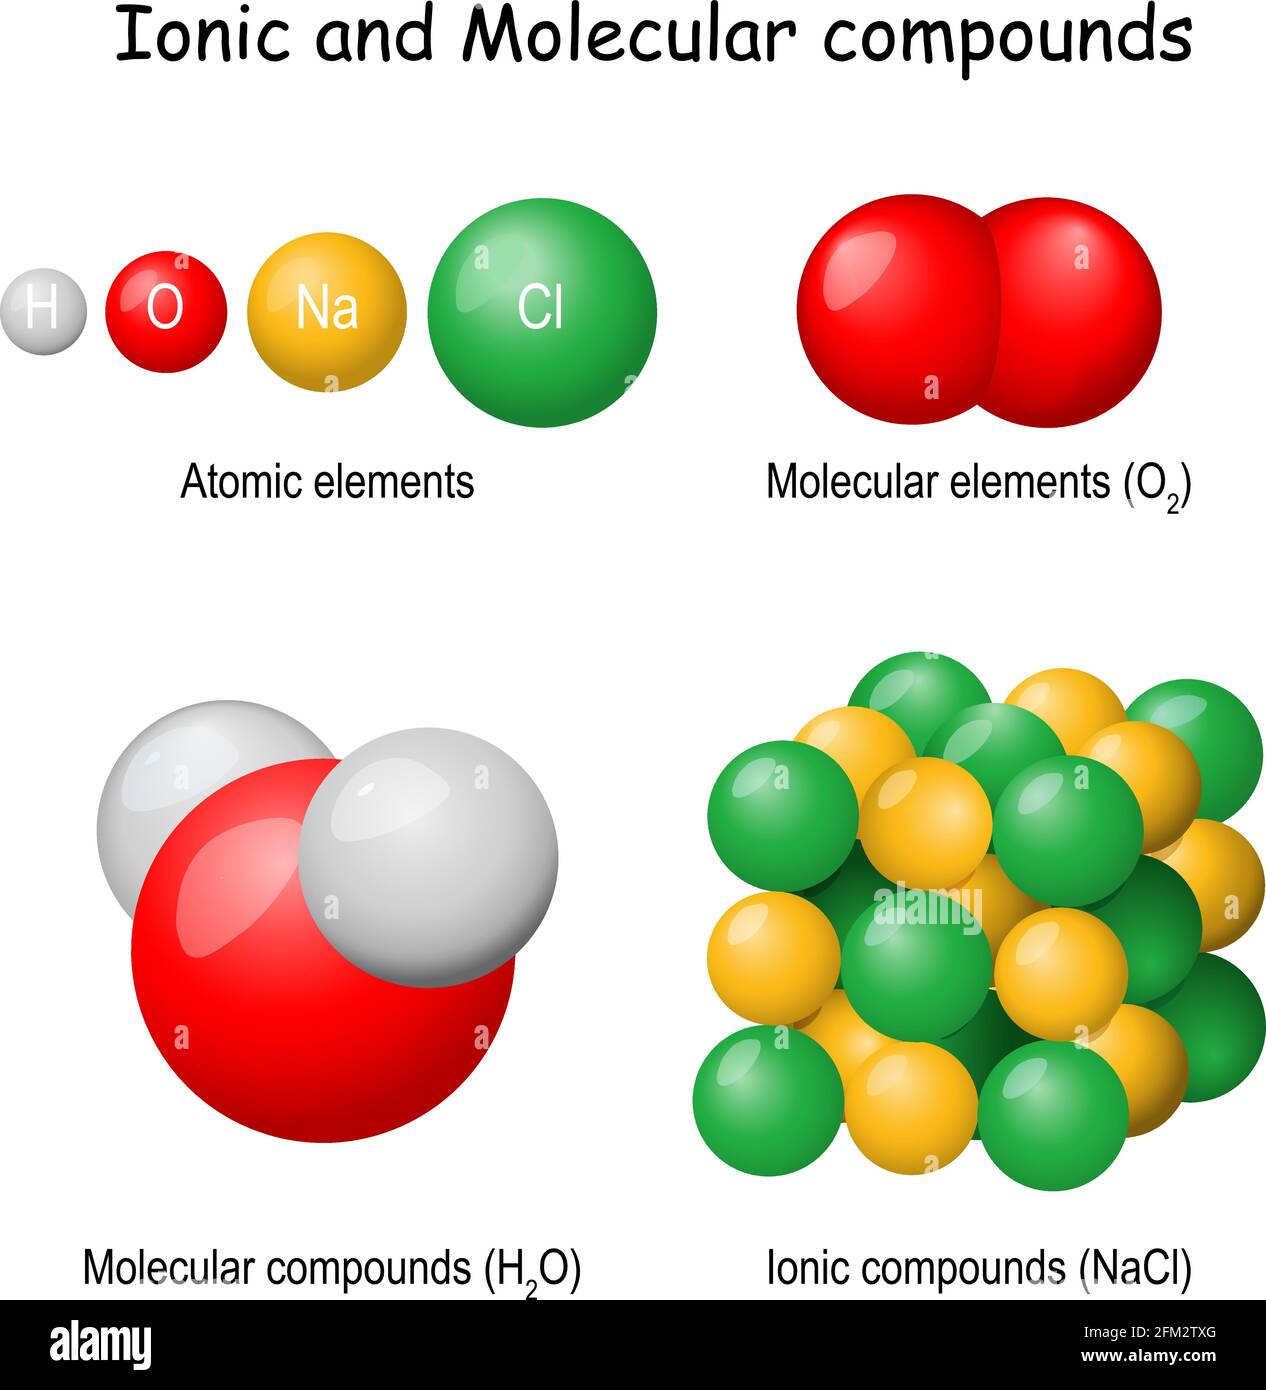 Ionische und molekulare Verbindungen. Klassifizierung reiner Substanzen: Atomar (Wasserstoff, Sauerstoff, Chlor, Natrium), molekularer Sauerstoff (O2), Wasser (H2O) Stock Vektor